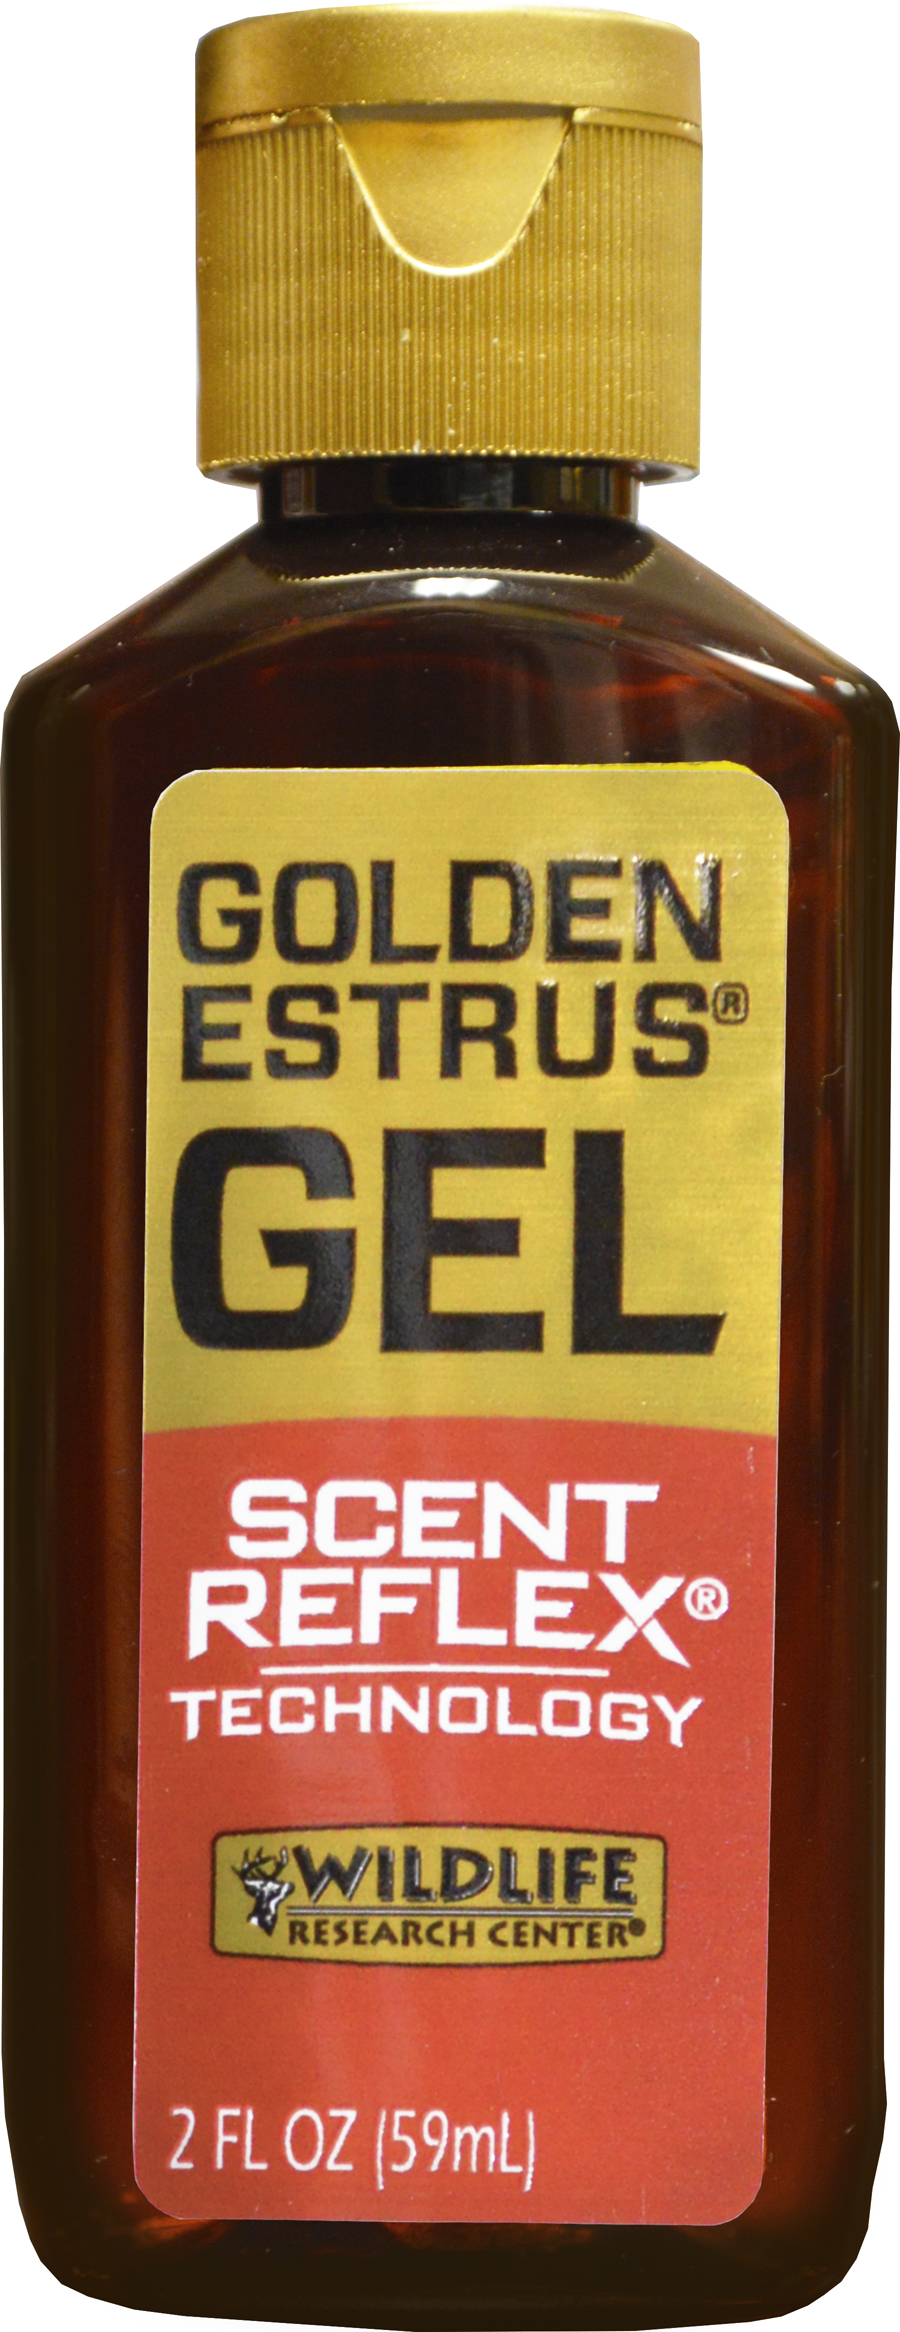 New Golden Estrus® Gel with Scent Reflex® Technology